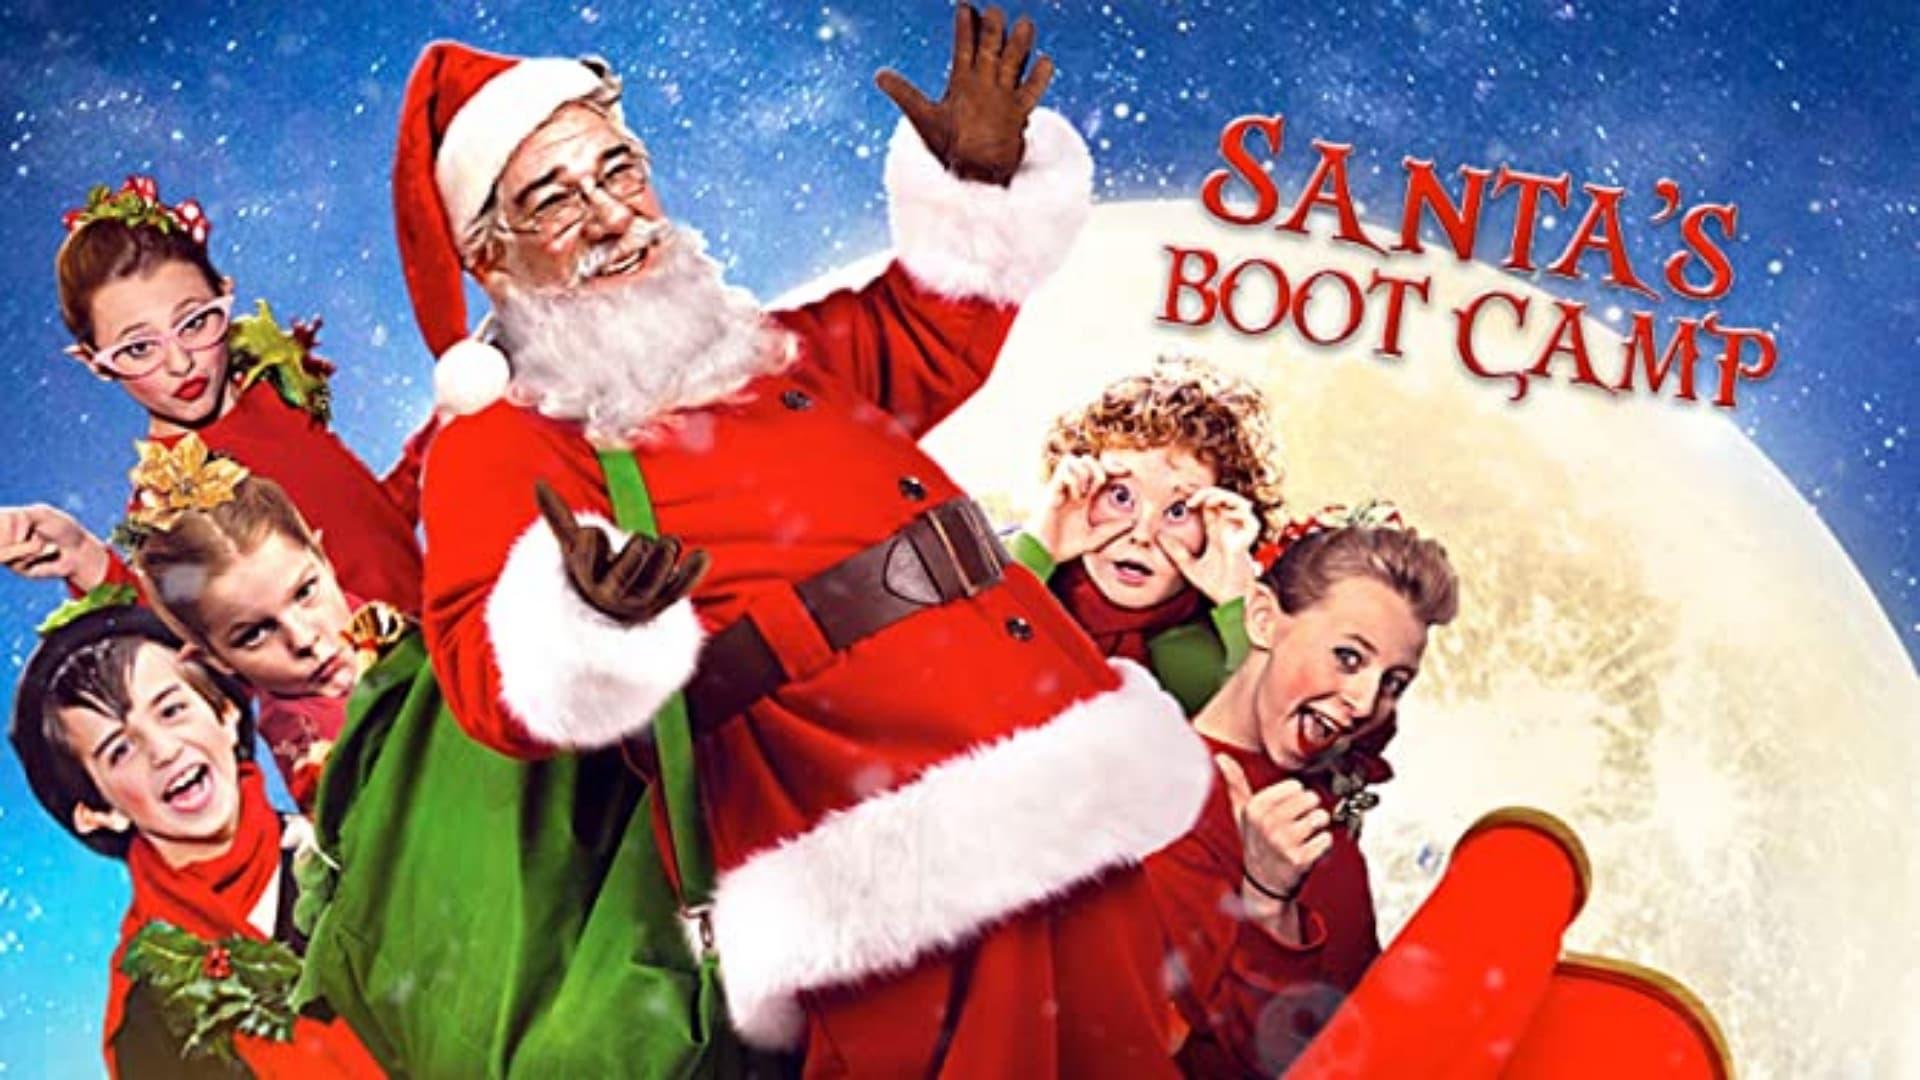 Santa's Boot Camp backdrop